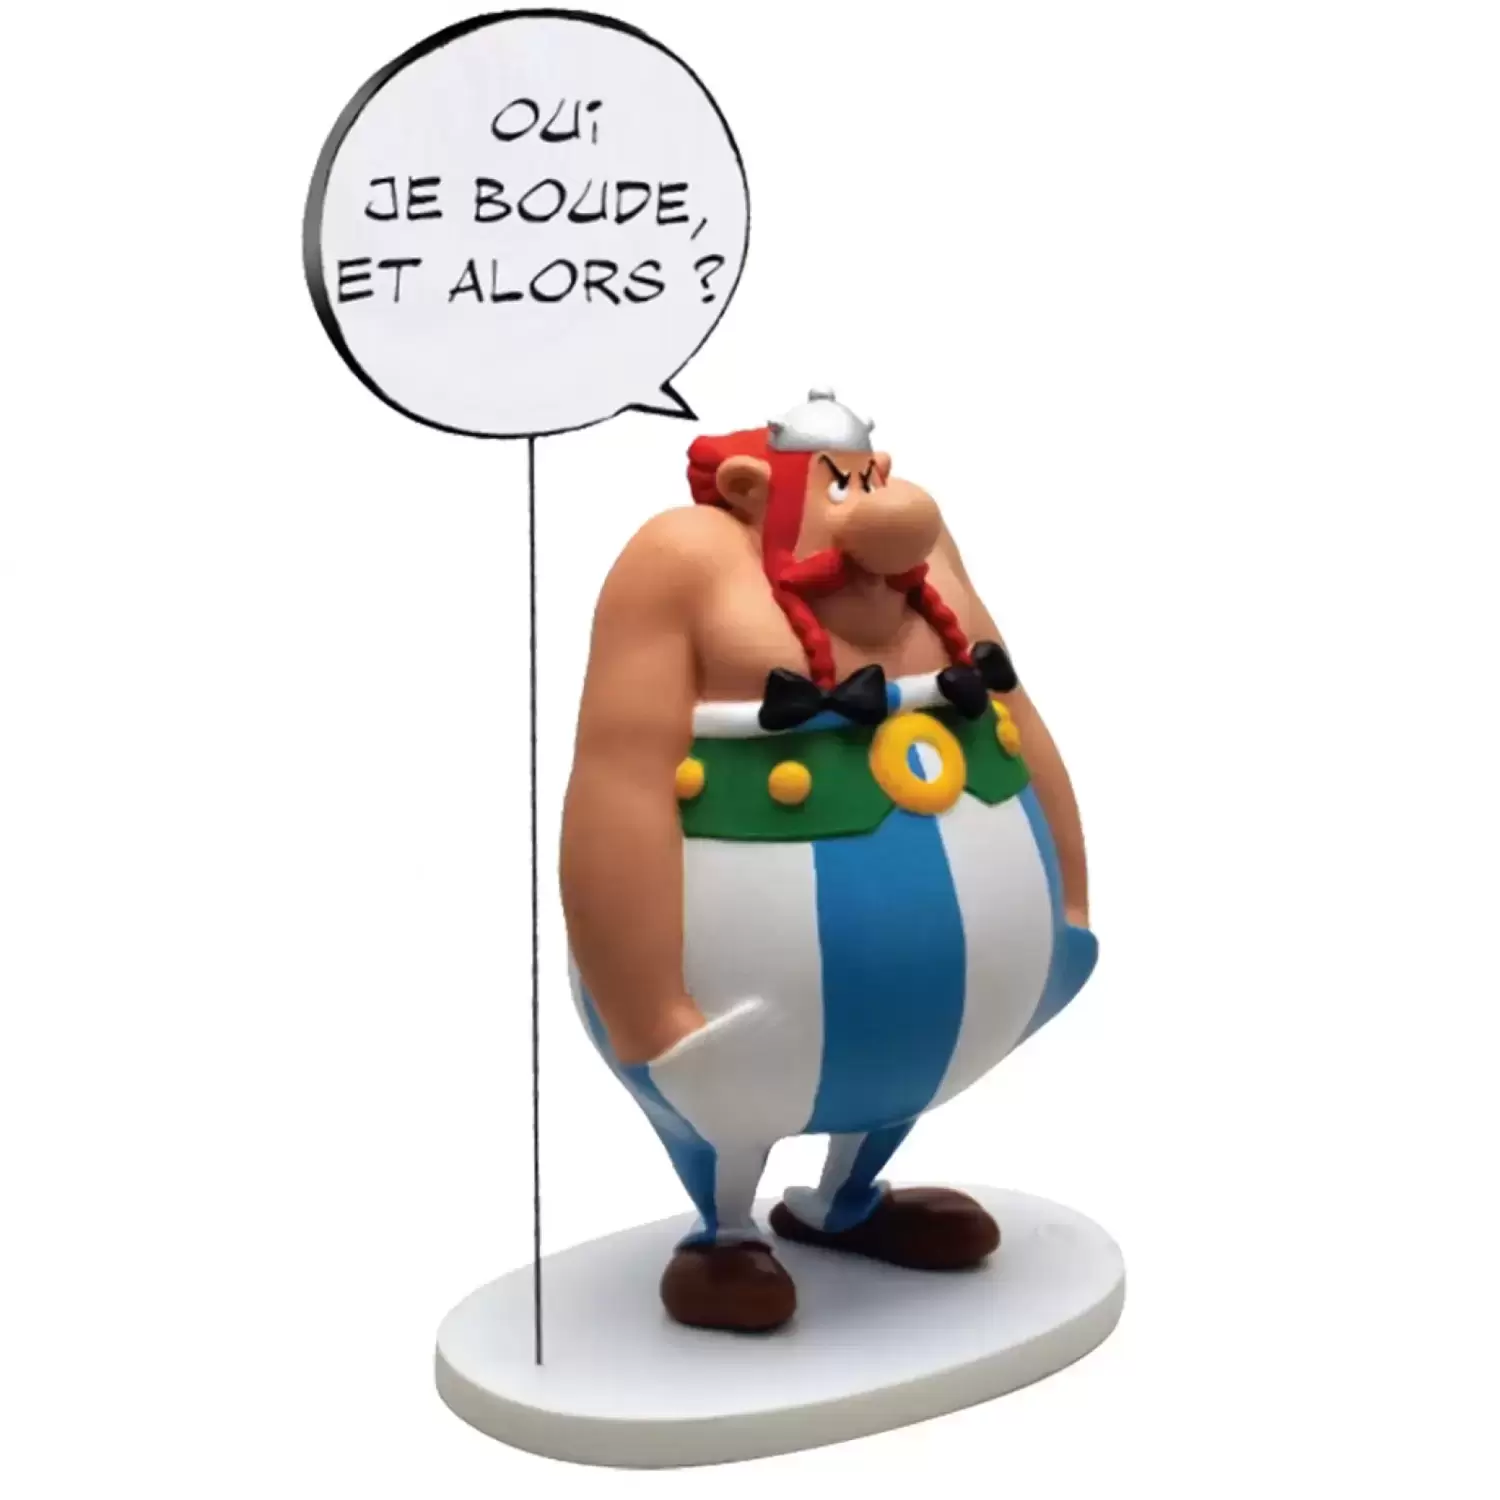 Asterix & Obelix Collectoys - Obélix - oui je boude, et alors ?